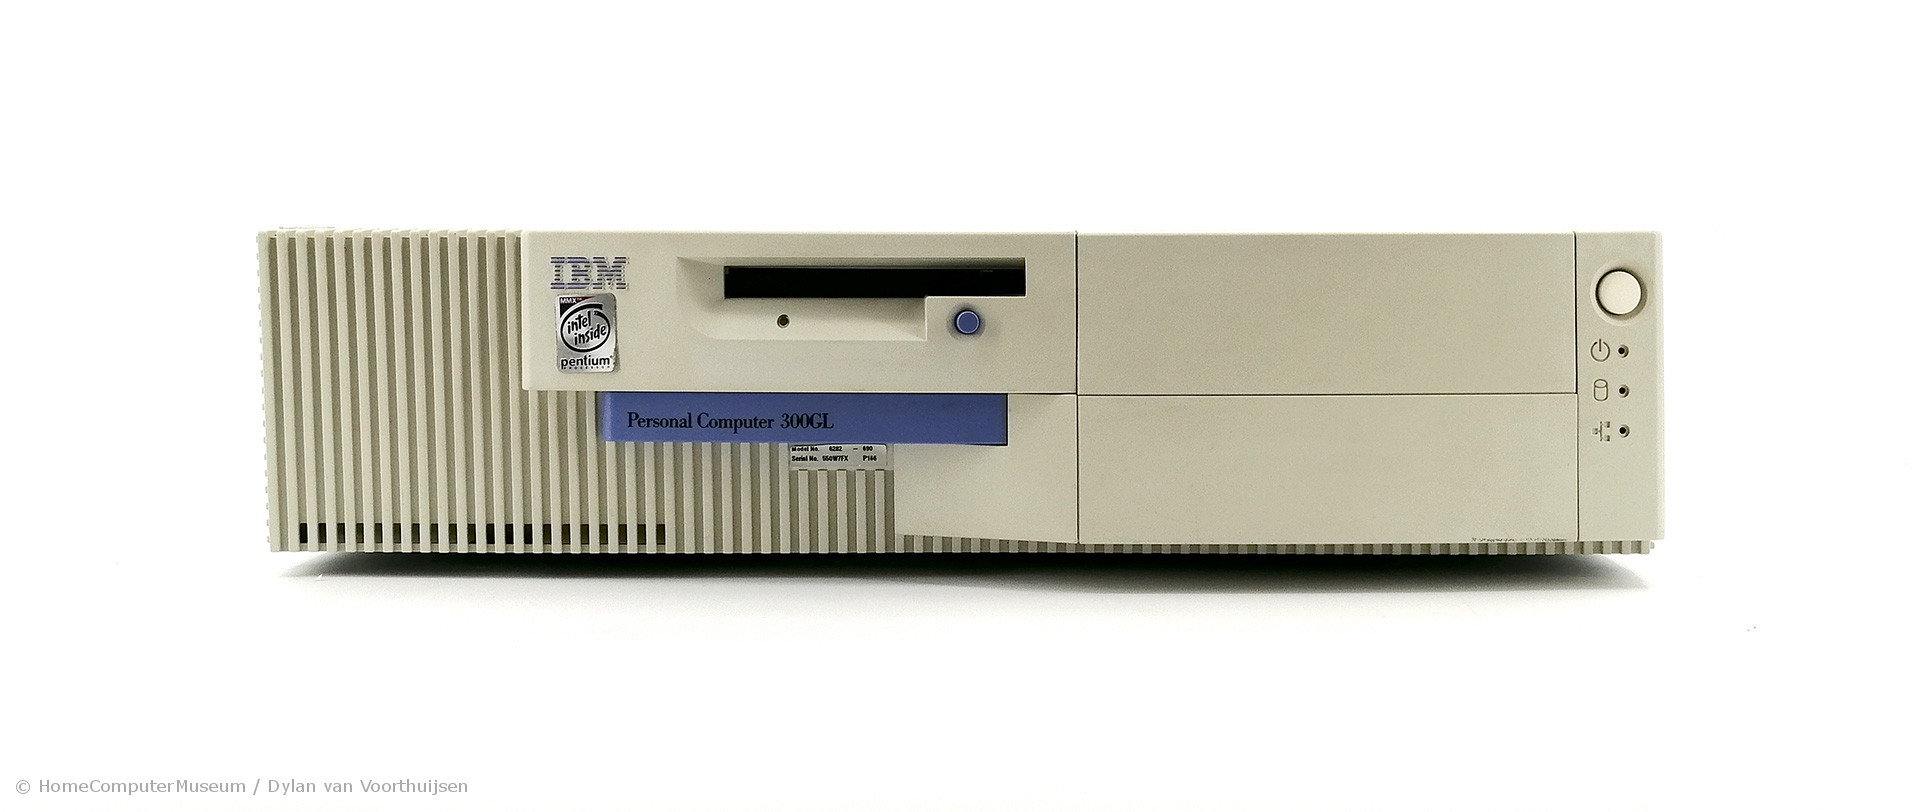 IBM 300GL PC本体